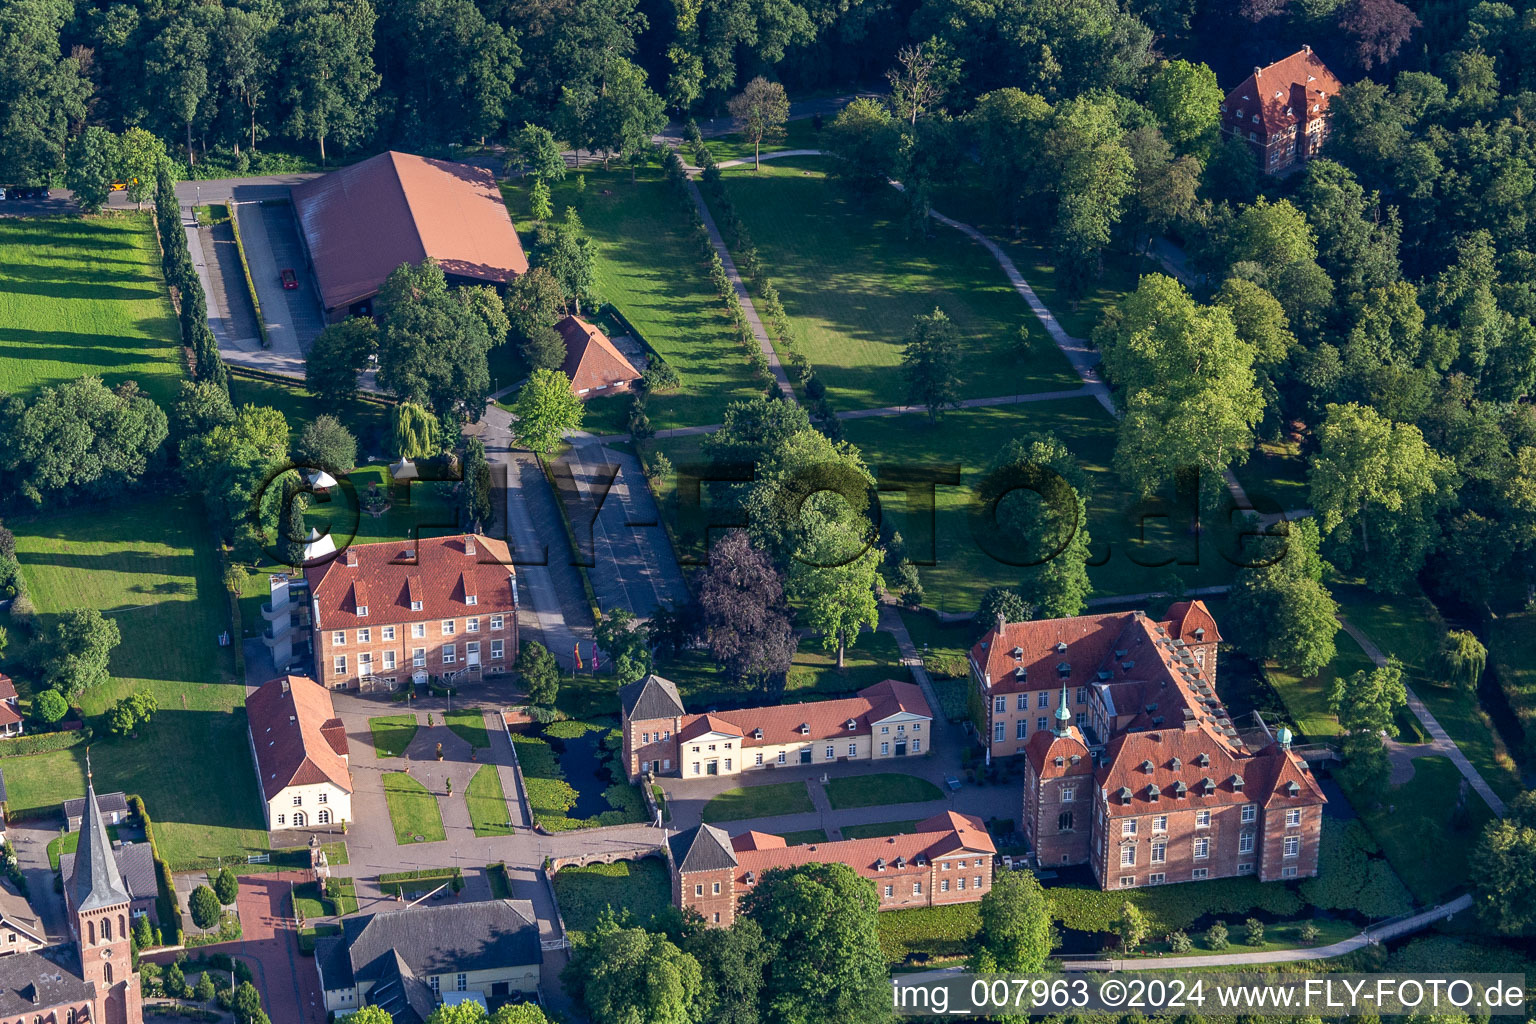 Luftbild von Gebäudekomplex des Weiterbildungs- und Bildungszentrums " Châteauform - Schloss Velen " an der Ramsdorfer Straße in Velen im Bundesland Nordrhein-Westfalen, Deutschland